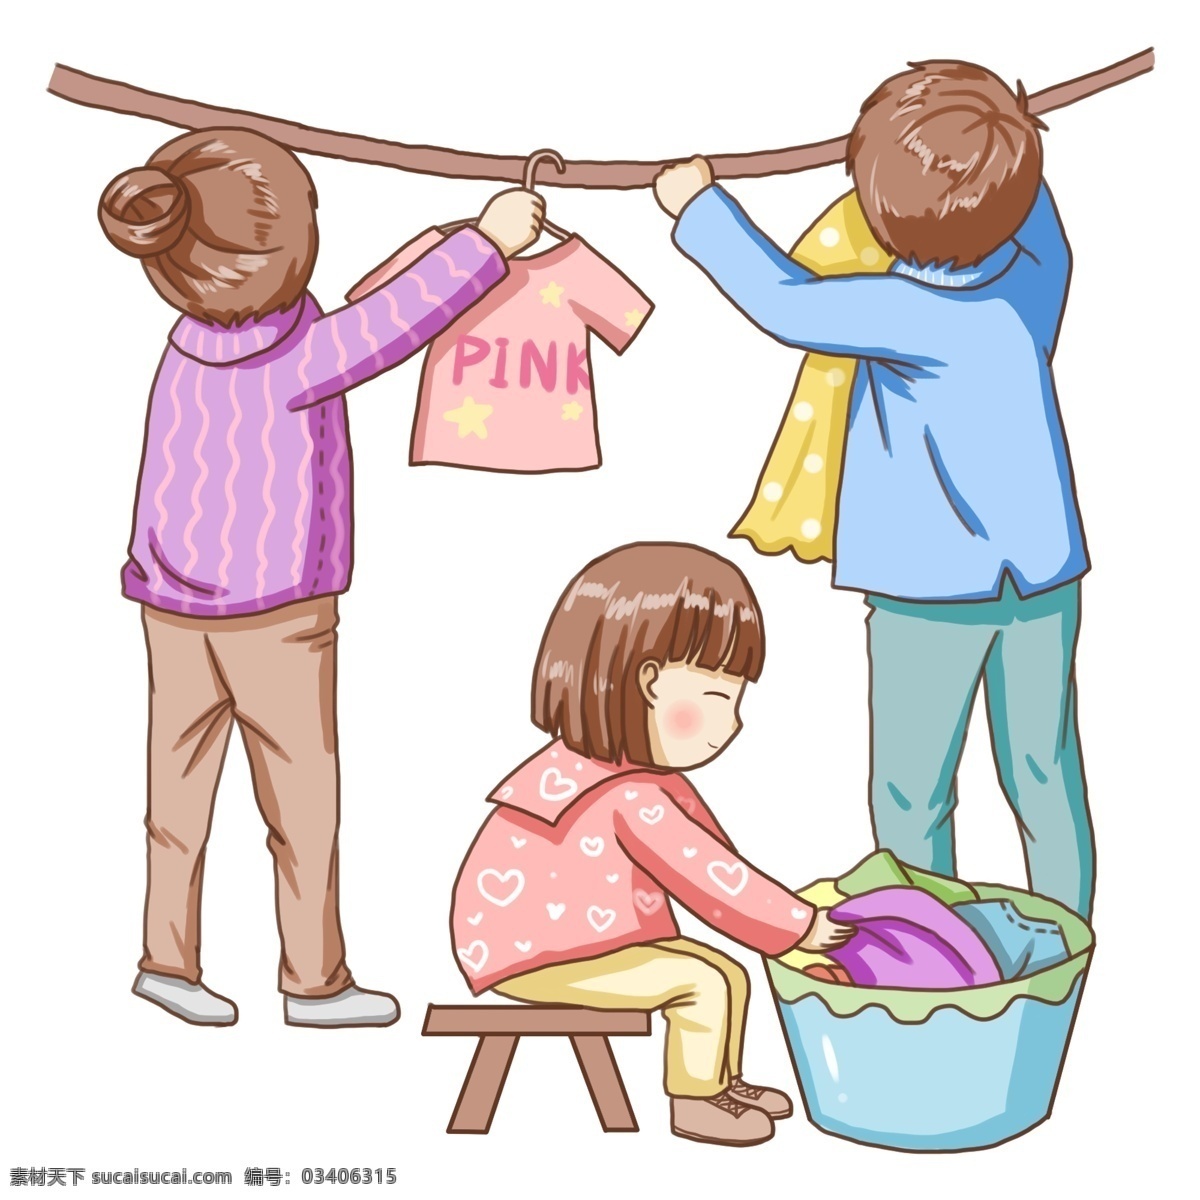 卡通晾衣服 卡通 人物 站立 女孩 洗衣服晾衣服 妈妈 晾衣架 卡通设计